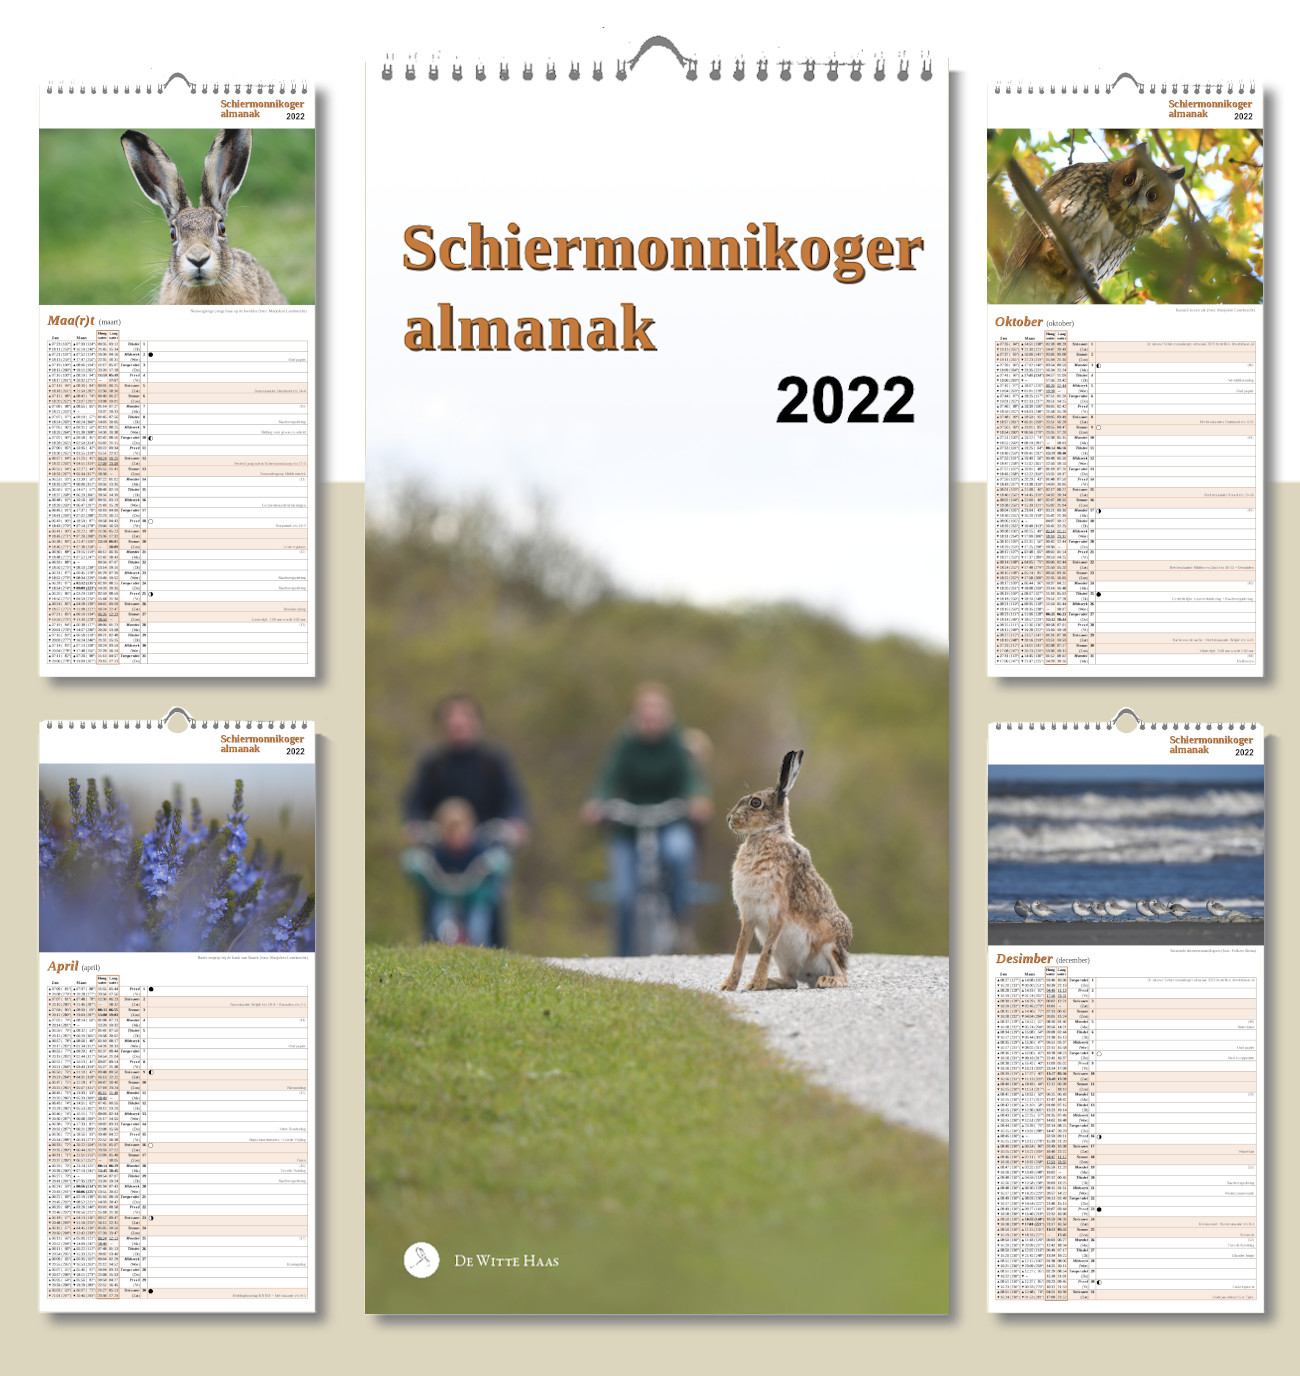 Afbeelding van voorpagina Schiermonnikoger almanak 2022 met vier andere pagina's